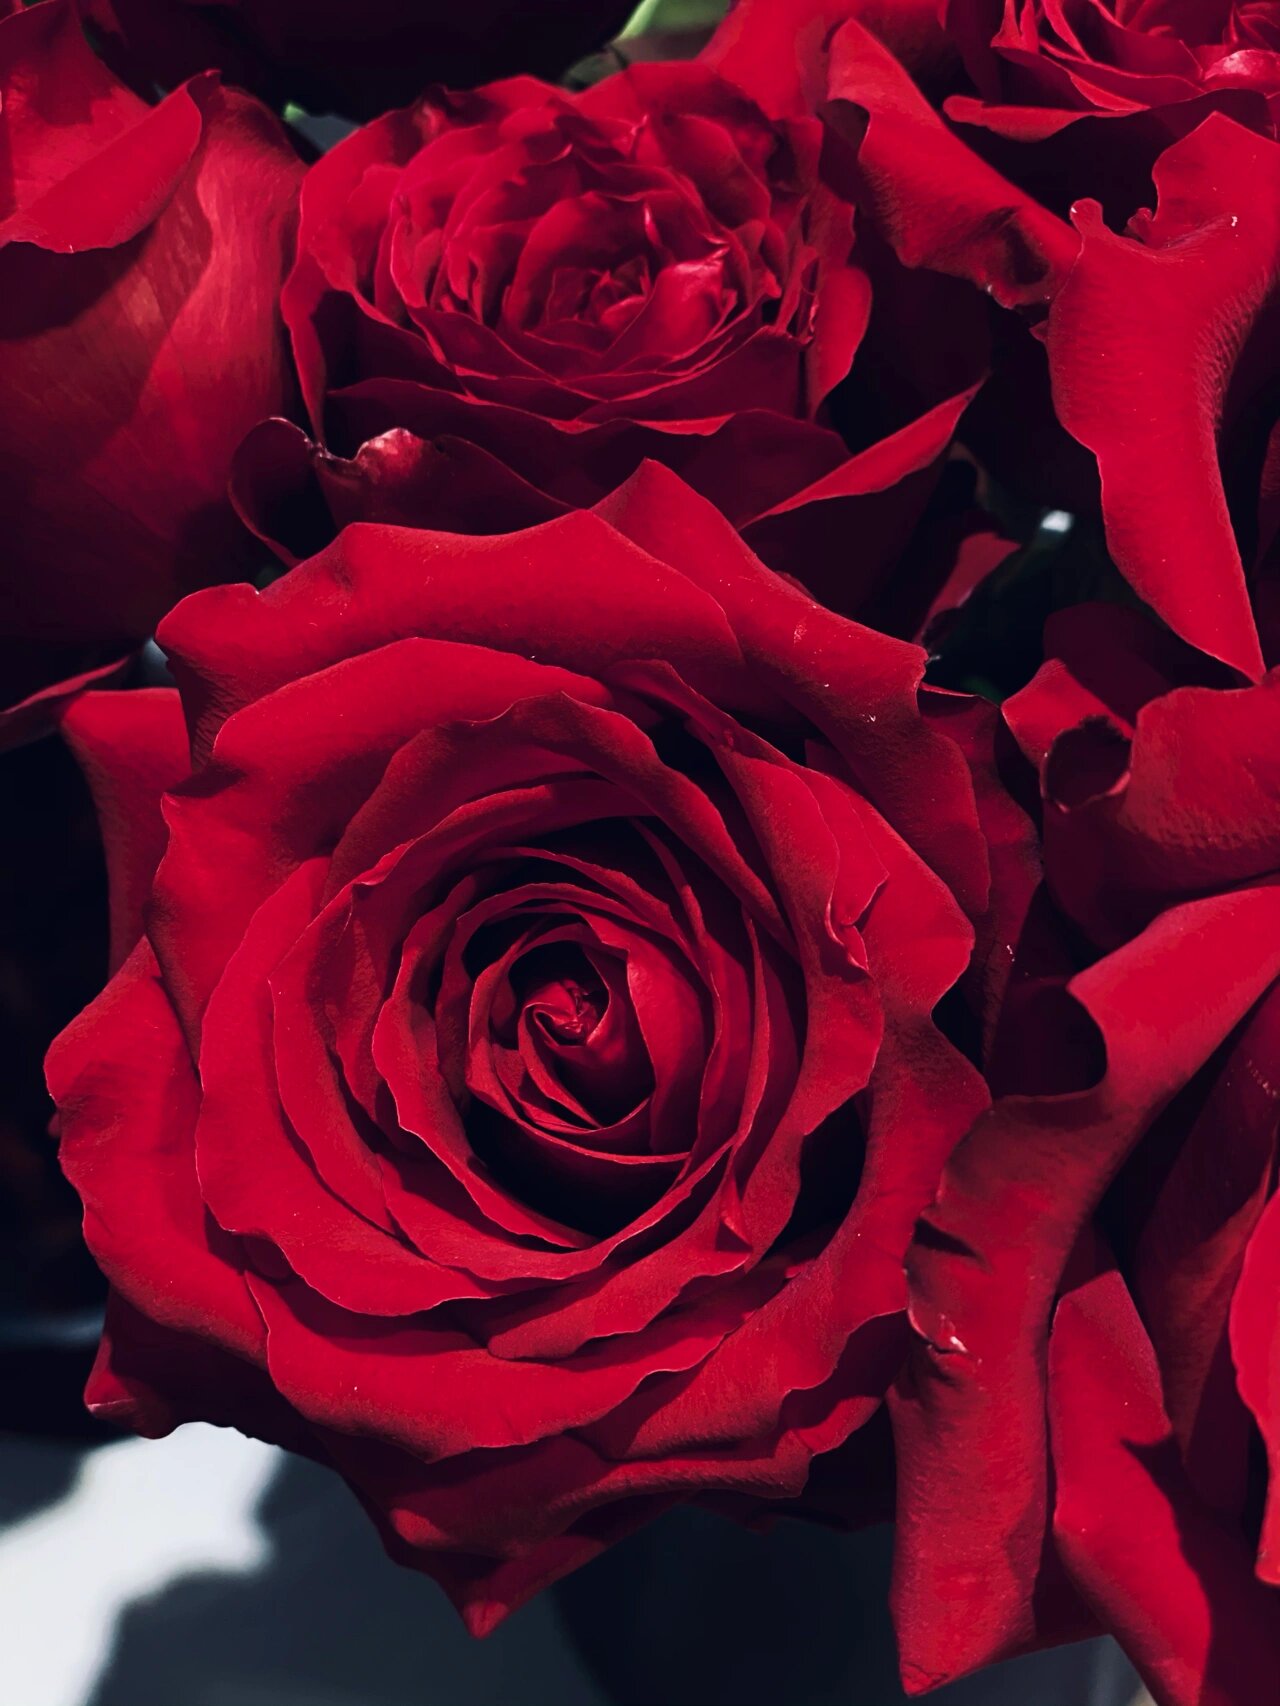 法兰西玫瑰(法国红) 又是一款称得上红色玫瑰中可以得满分的品种了